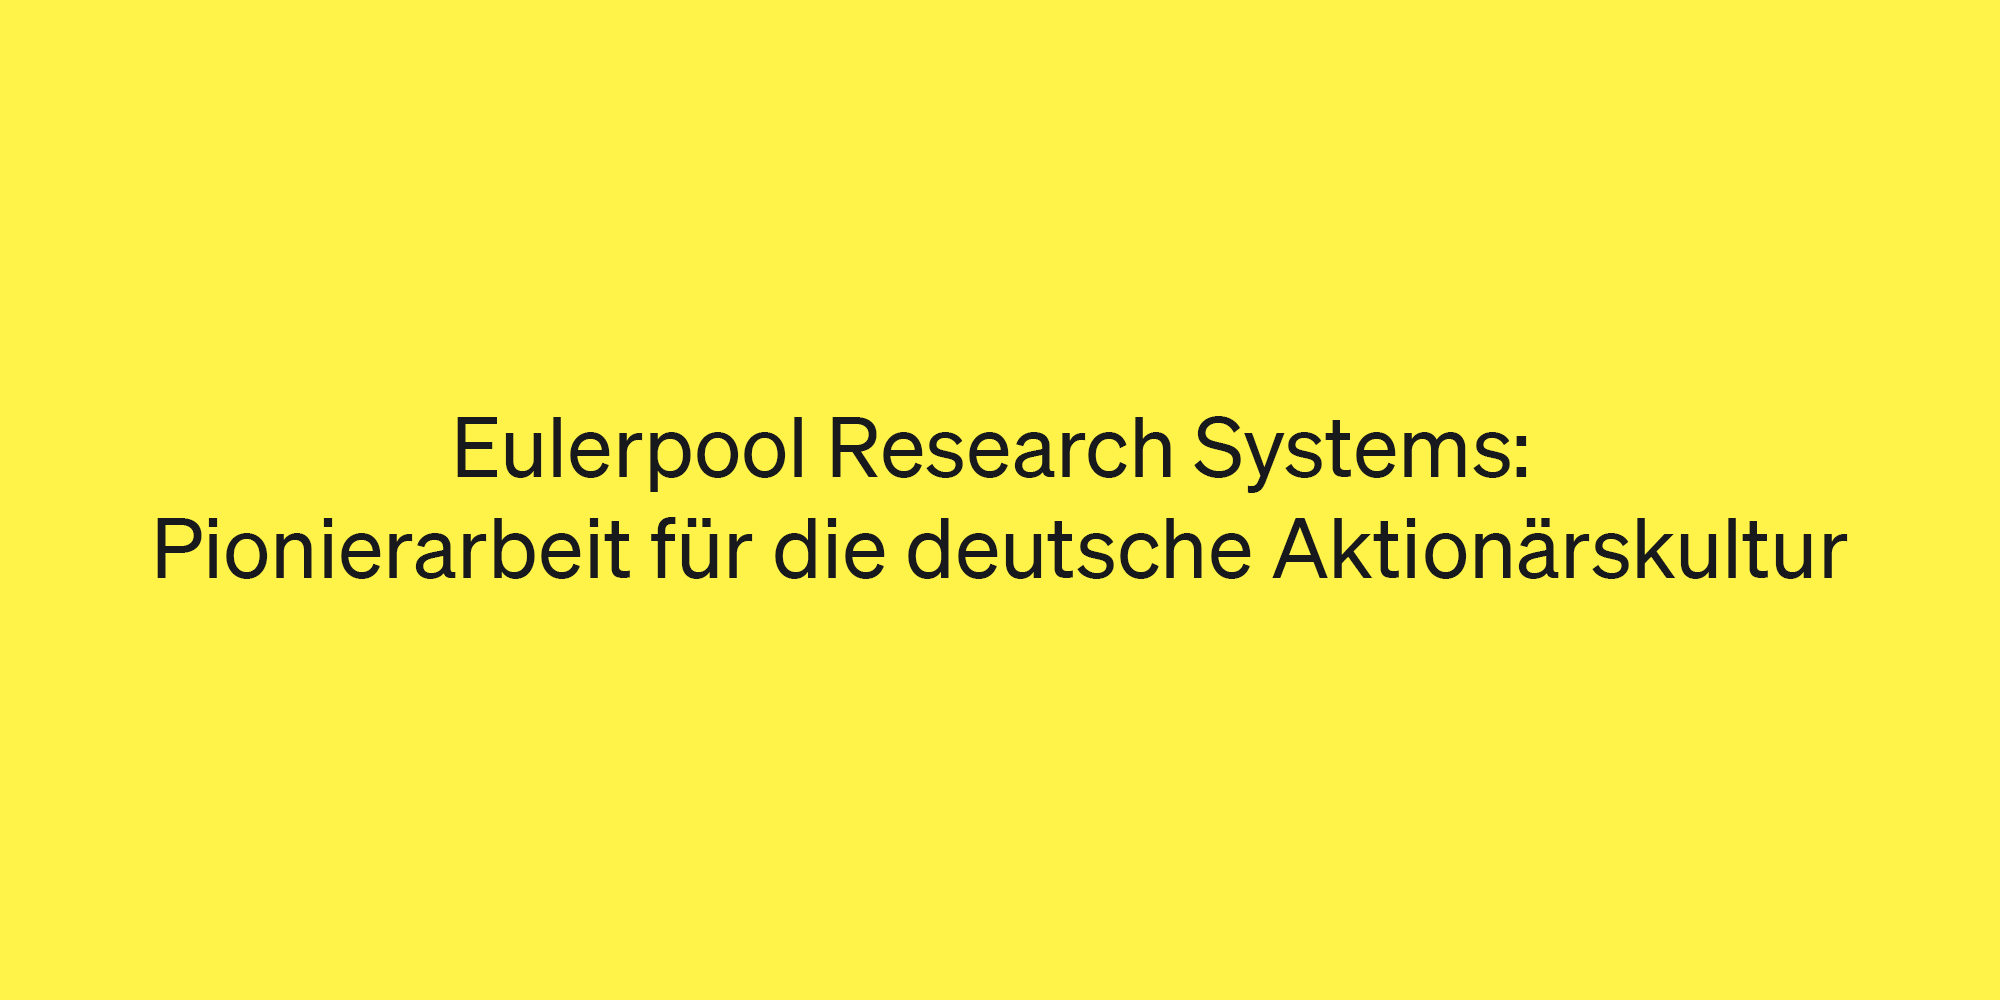 Eulerpool Research Systems: Pionierarbeit für die deutsche Aktionärskultur